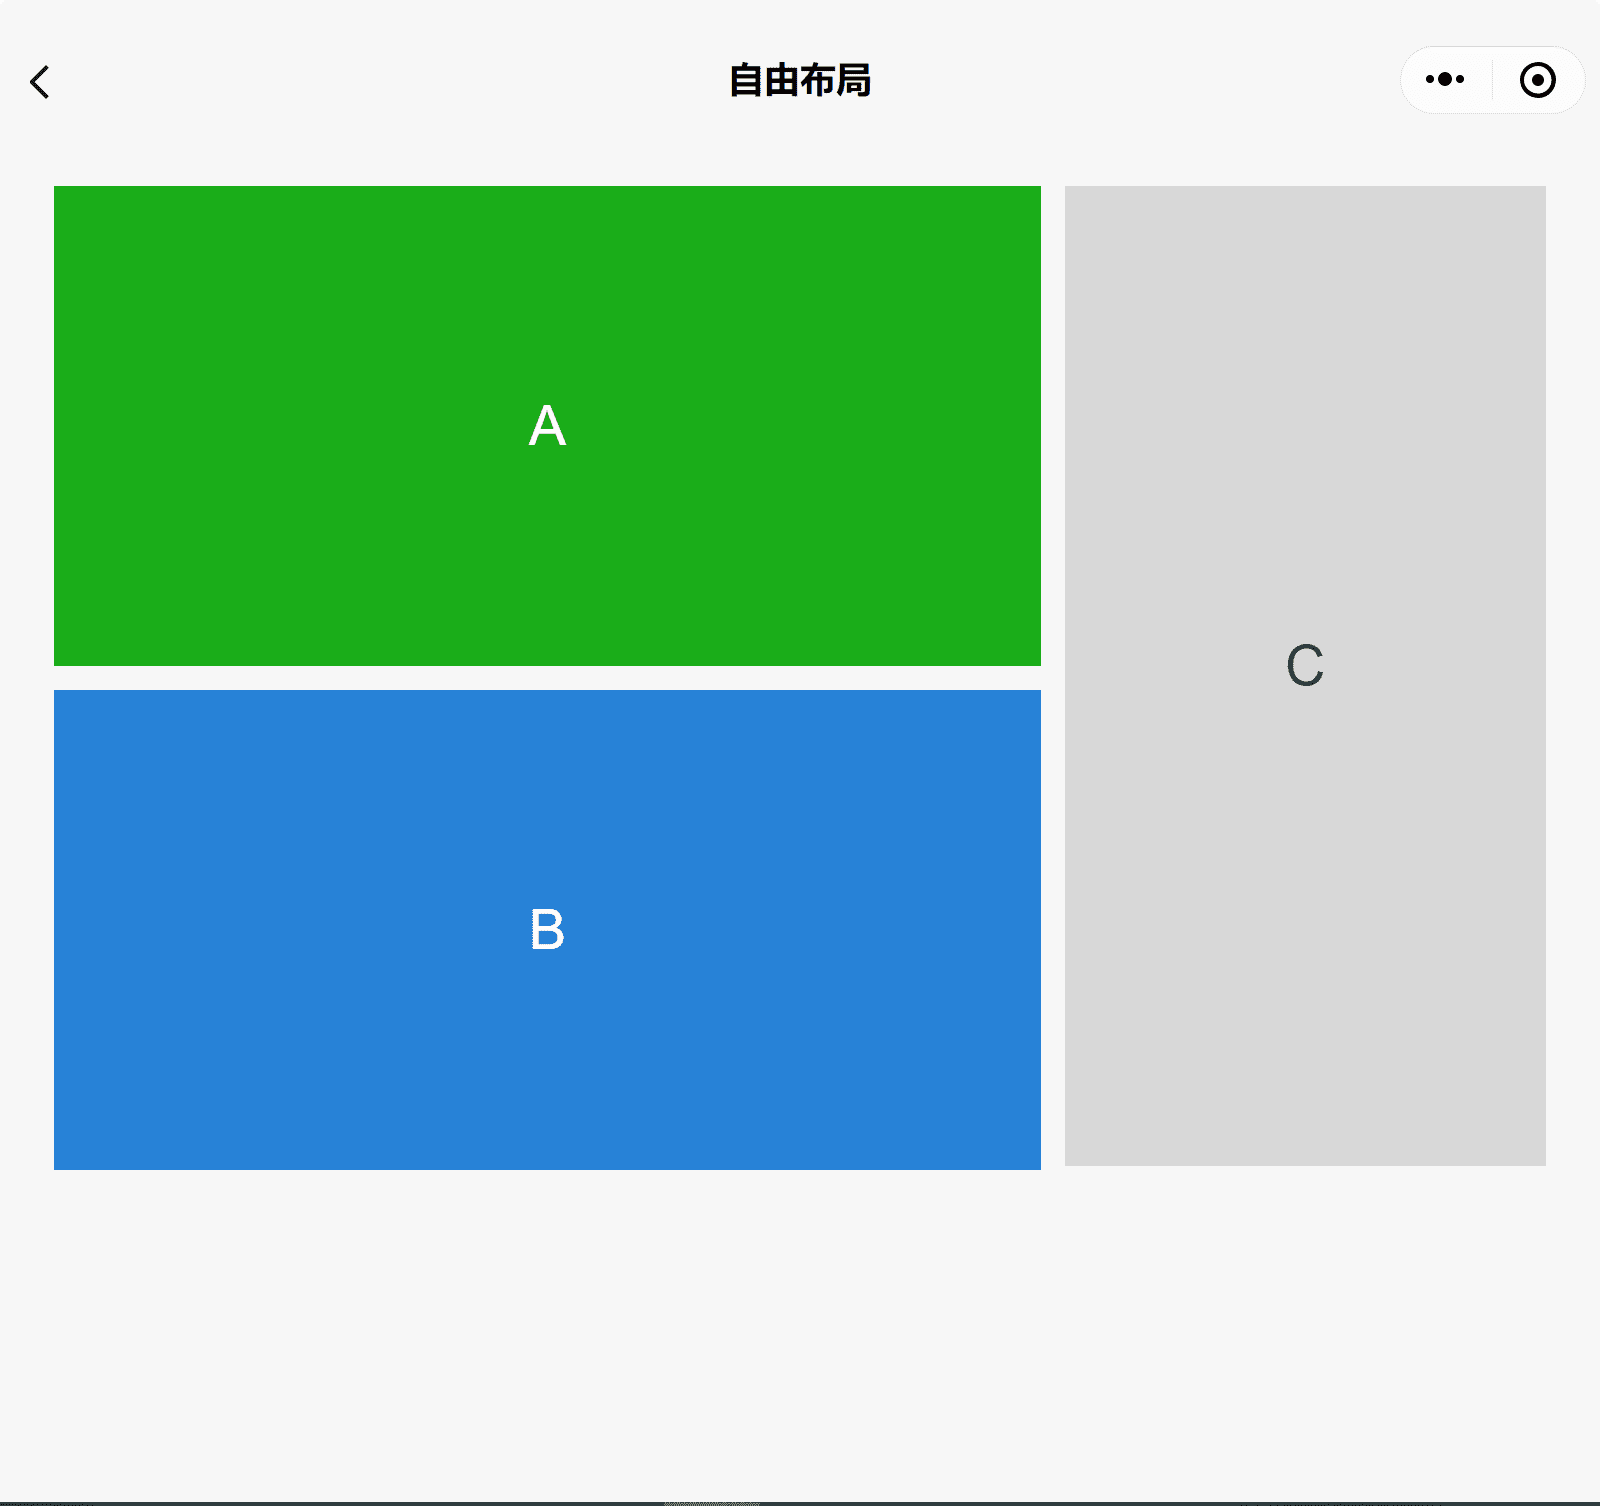 3개의 상자 A, B, C가 표시된 넓은 창에 표시된 WeChat 구성요소 데모 앱 A와 A는 측면에 B와 C 위에 쌓여 있습니다.